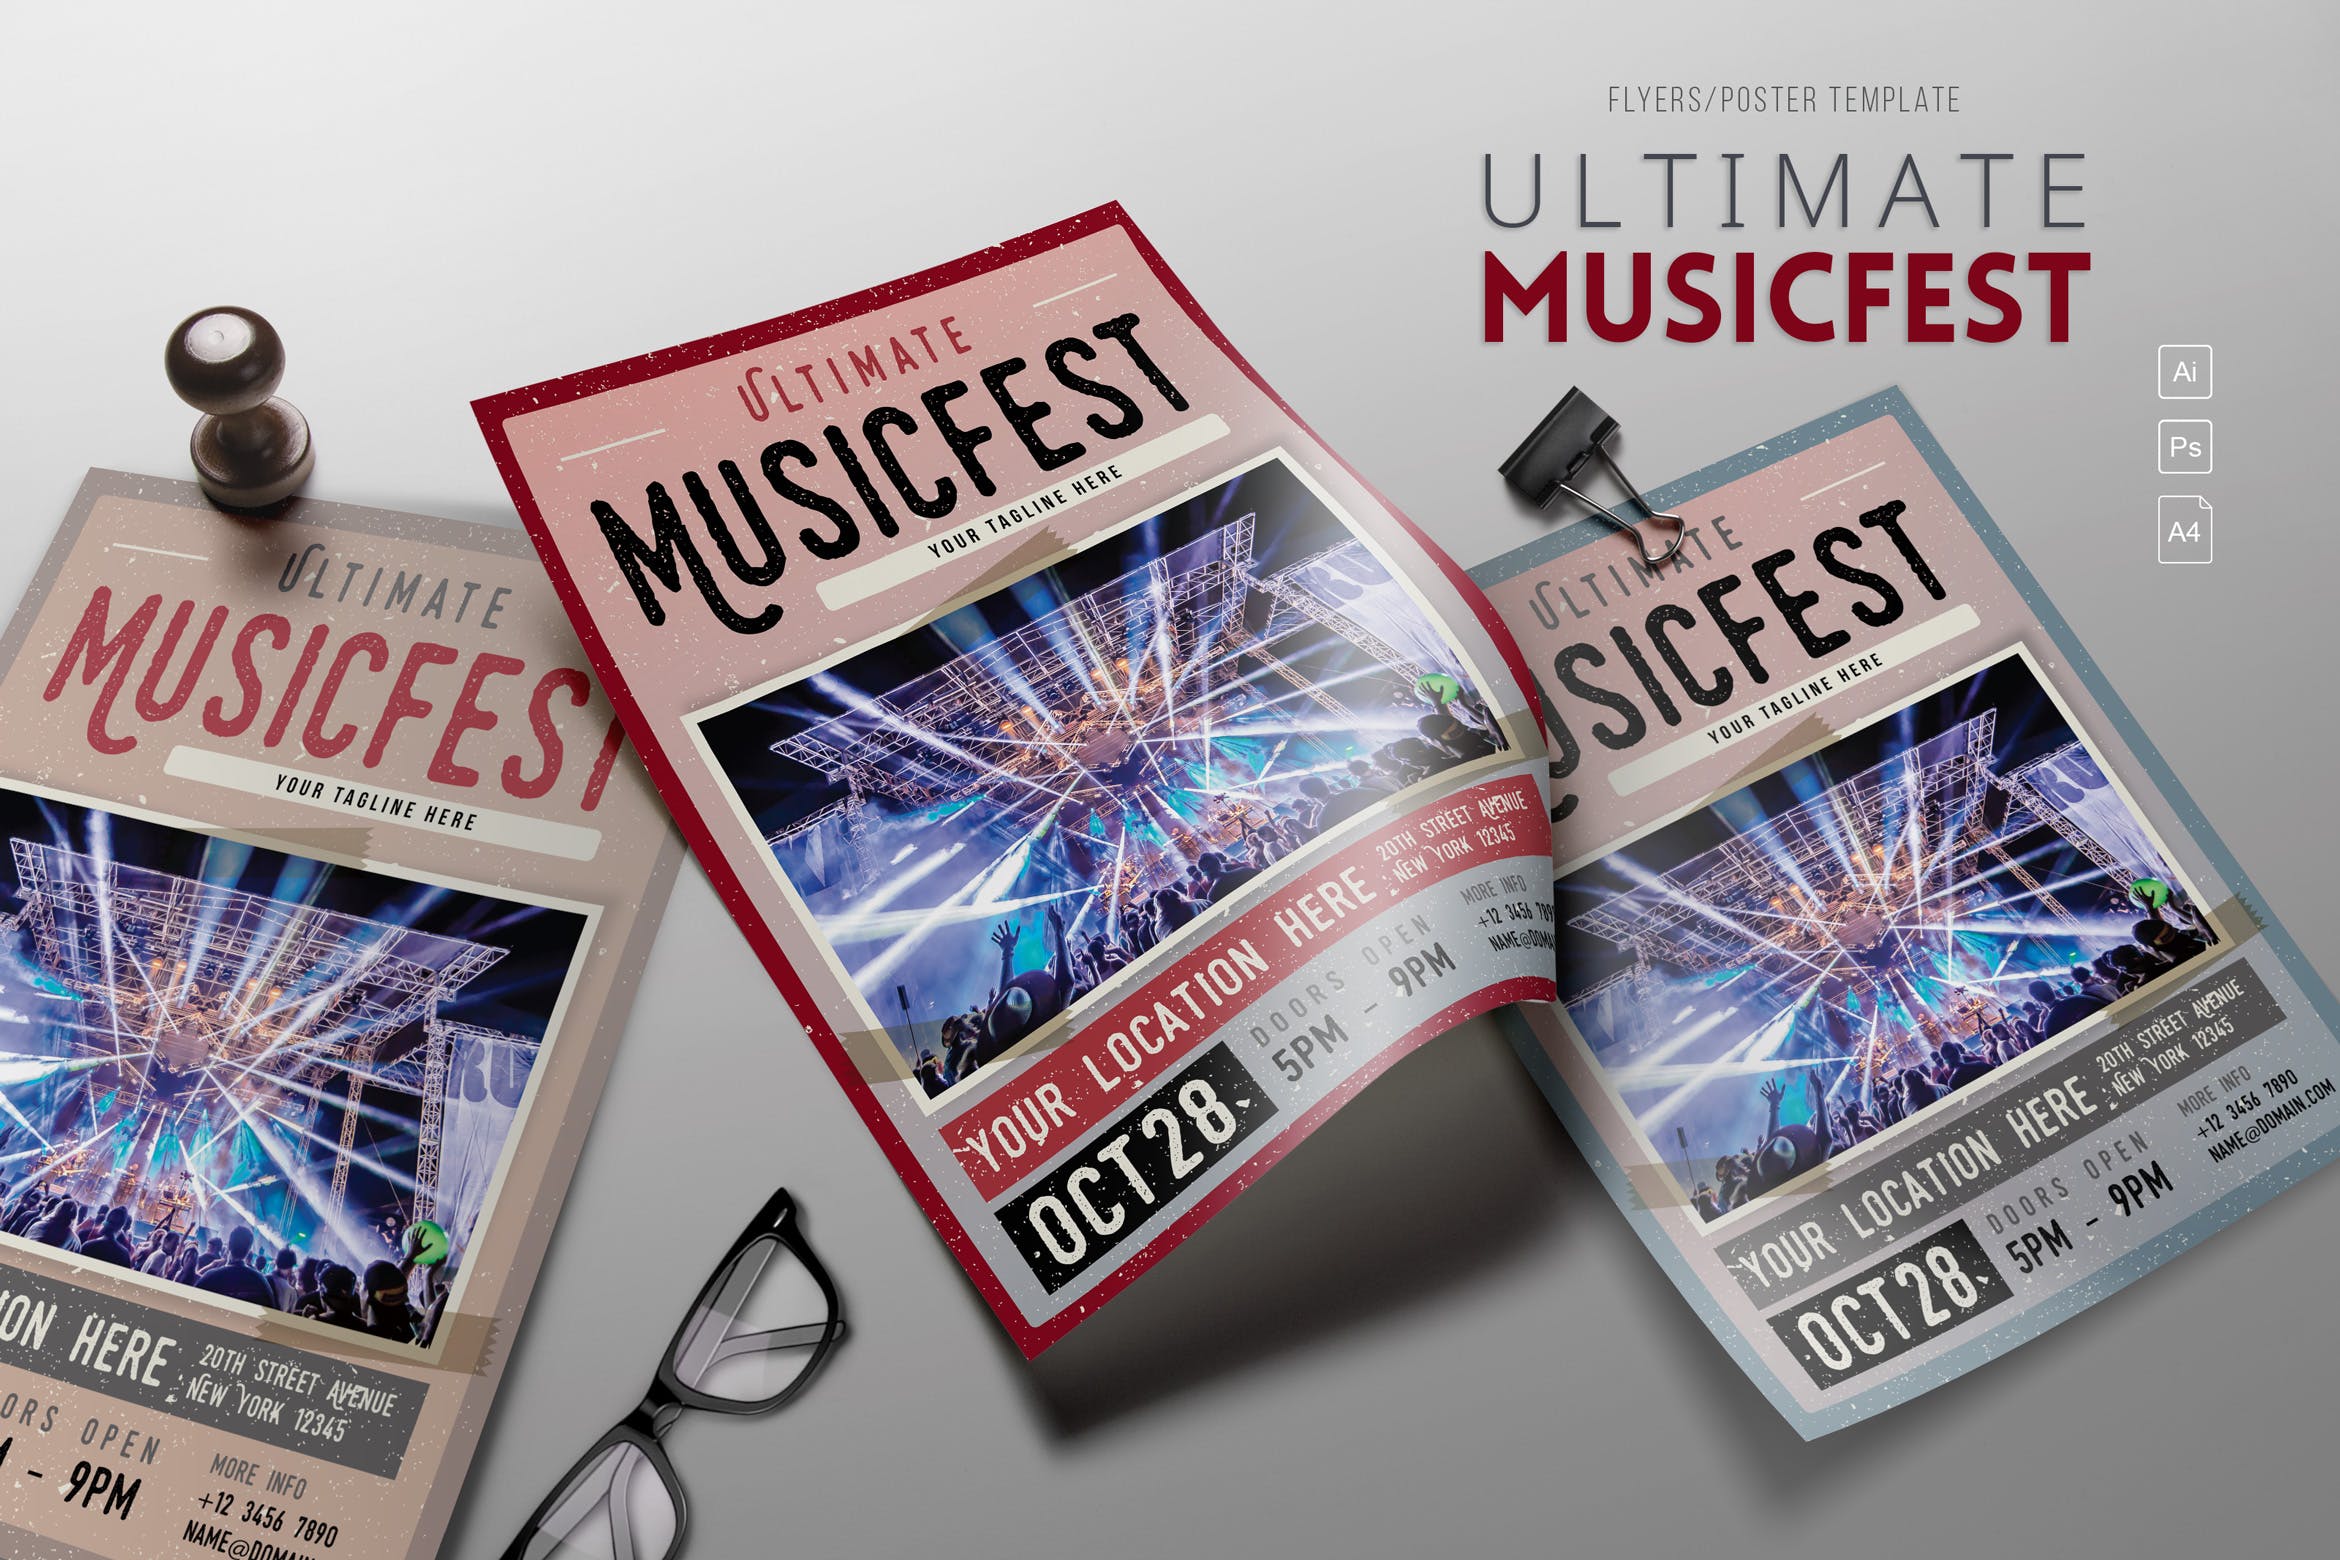 大型音乐节活动宣传海报设计模板 Ultimate MusicFest Flyers插图